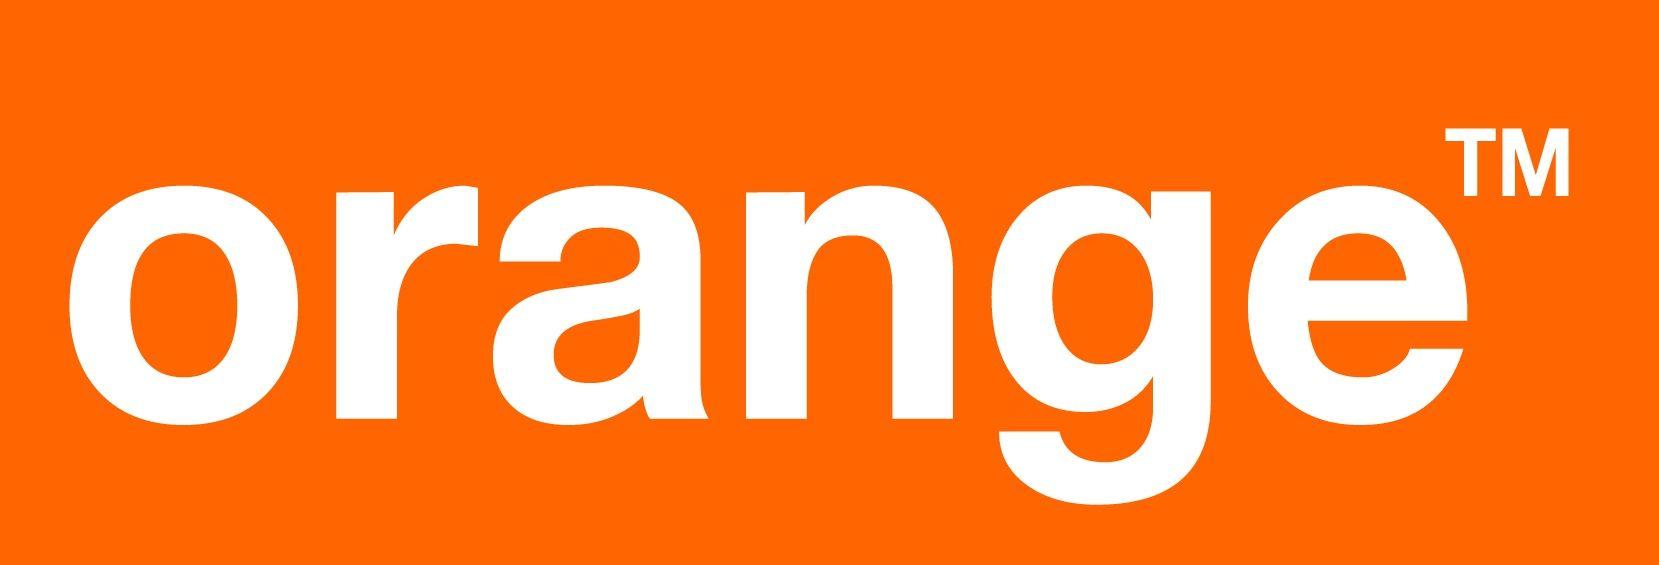 Orange Company Logo - 880 4035 Orange Customer Service